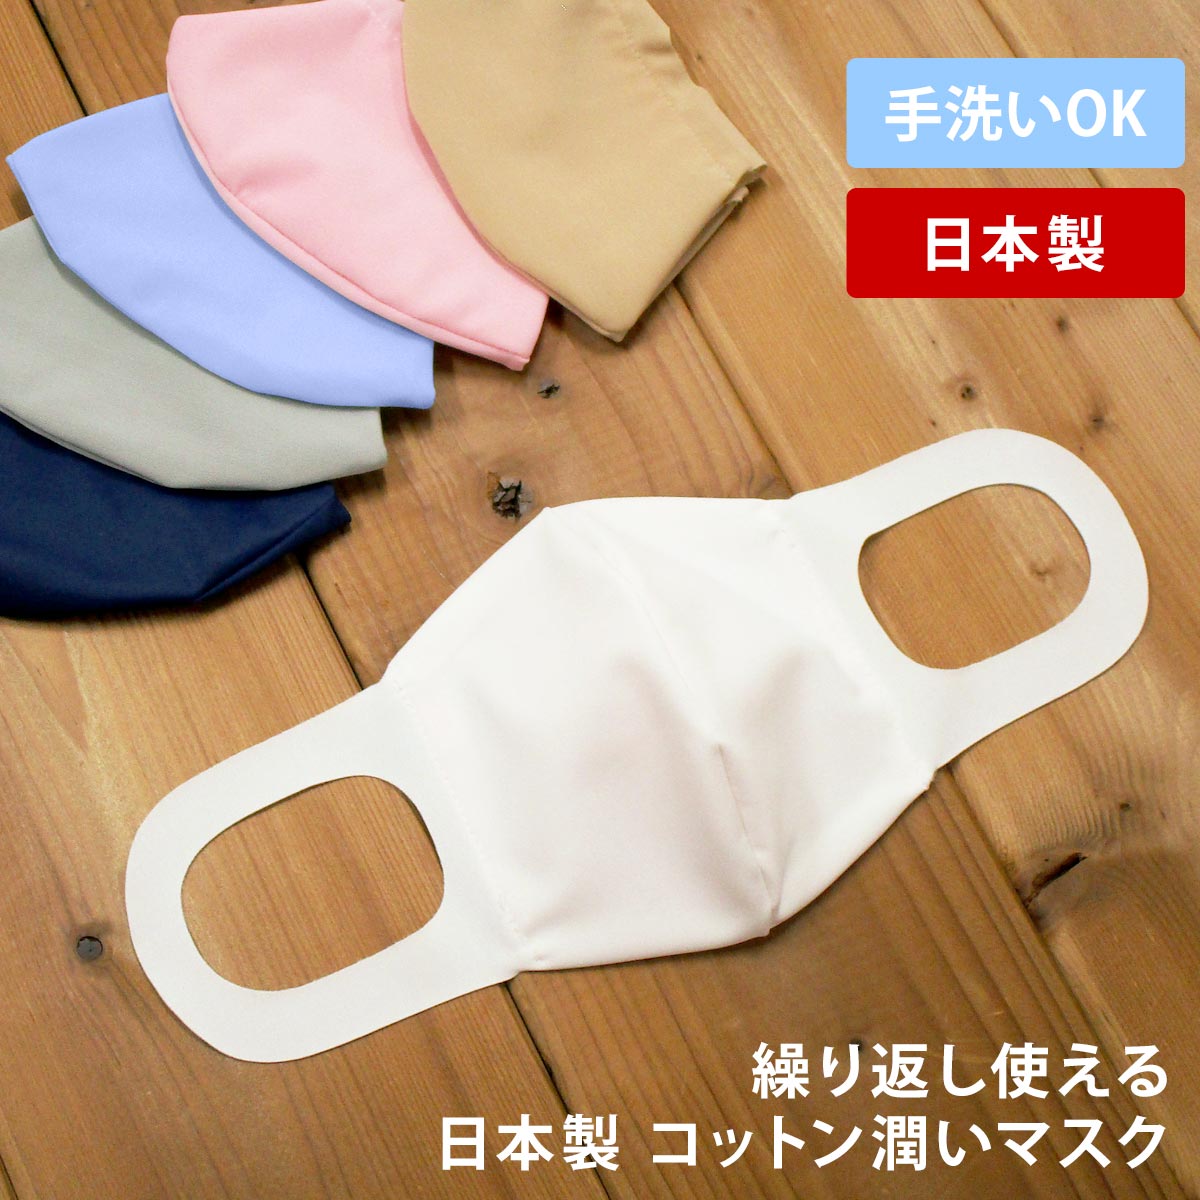 マスク 日本製 立体マスク 繰り返し使える 洗える 全6色 白 コットンマスク スノーホワイト ブルー ベージュ ネイビー ピンク グレー 吸水速乾 潤う 保湿素材 オアシスロード使用 母の日